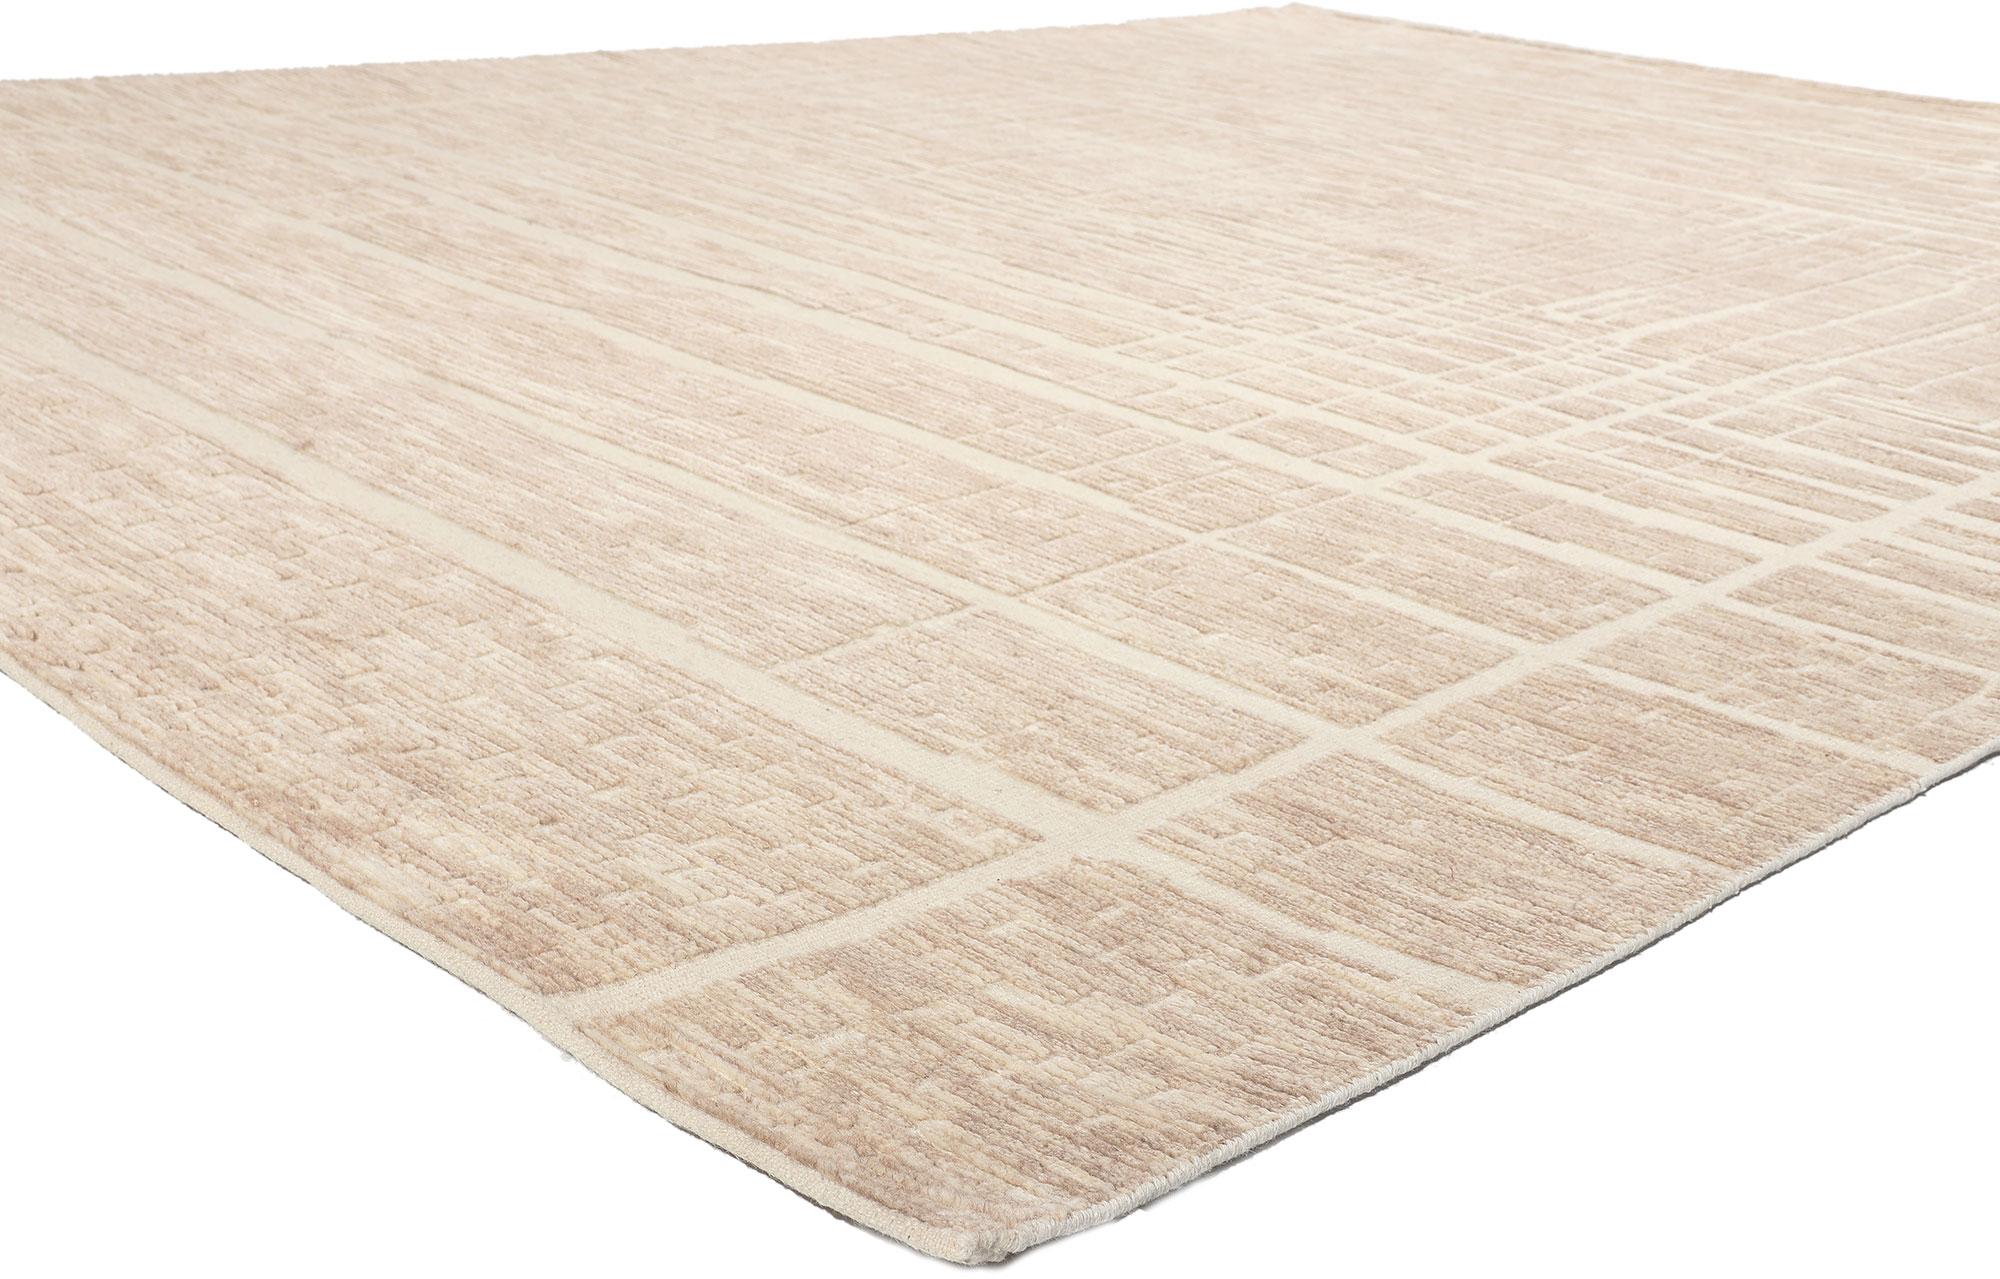 30980 Organic Modern Neutral Shibui High-Low Rug, 09'02 x 11'11.
Reflétant les éléments du Shibui avec des détails et une texture incroyables, ce tapis en laine nouée à la main est simple, subtil et constitue une vision captivante de la beauté du